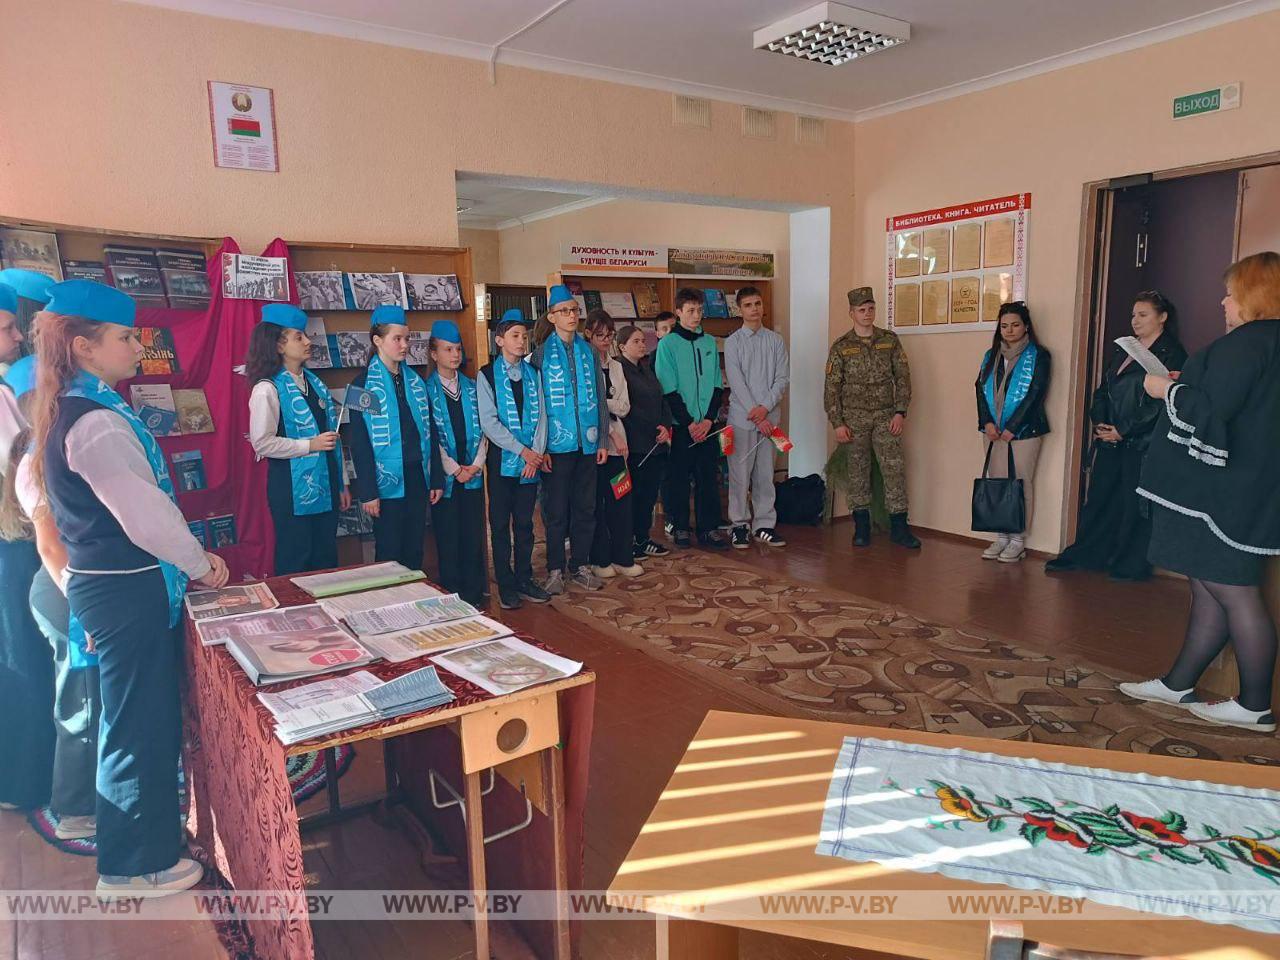 Сотрудники Жидченского Дома культуры провели для учащихся школы мероприятие, посвященное Международнрму дню освобождения узников фашистских концлагерей